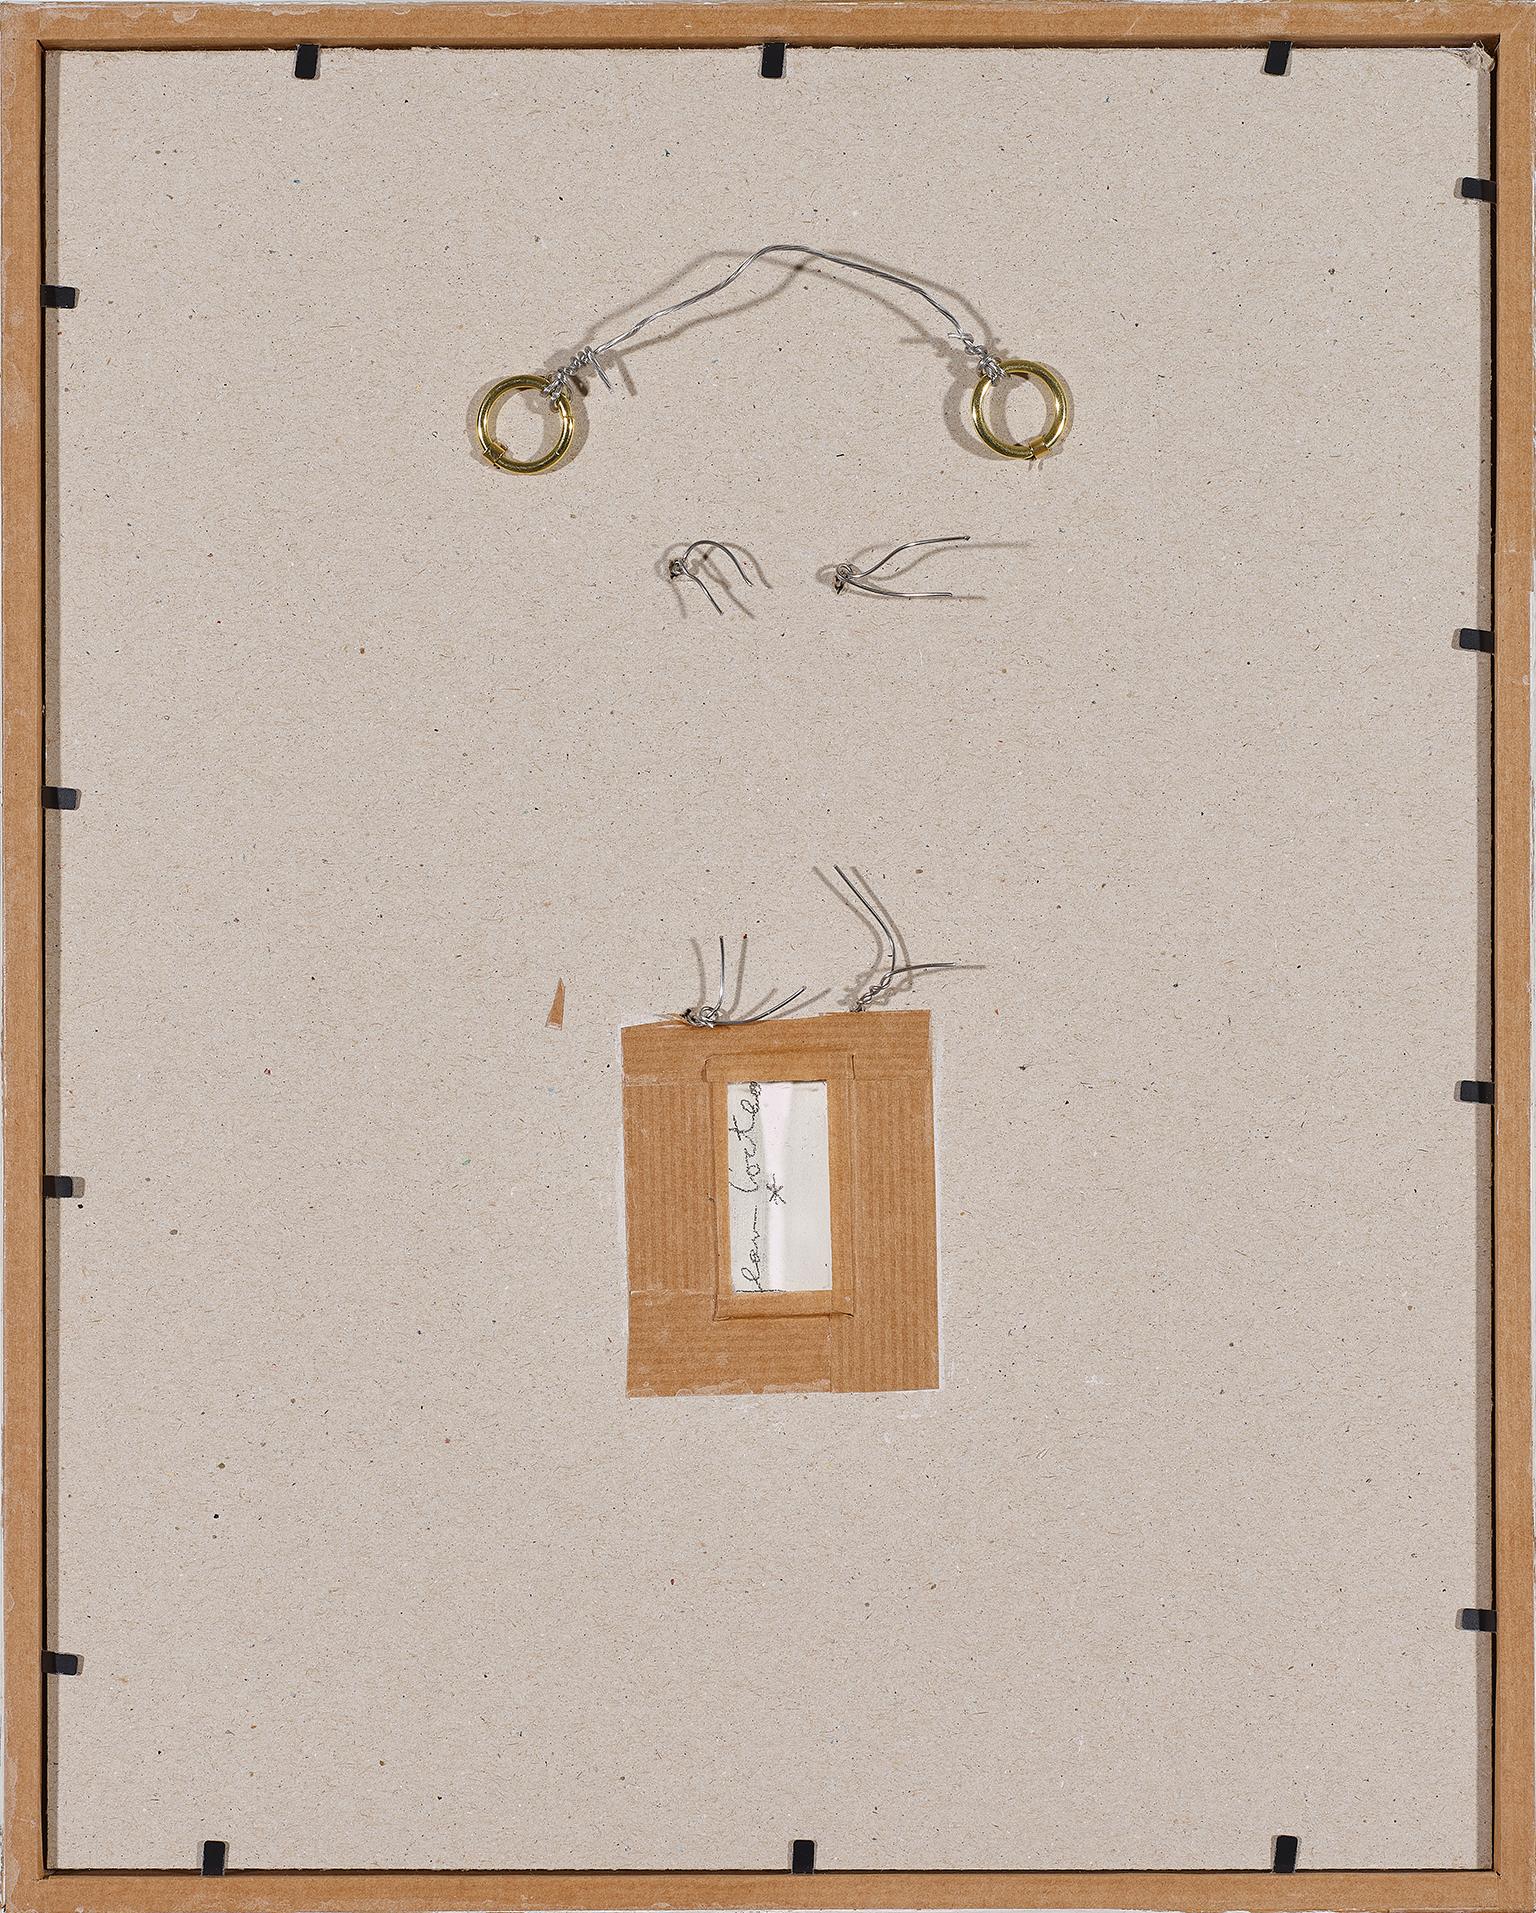 Jean Cocteau ( 1889 - 1963 )

Vé and Astrology  ceramic's pendant :

Vé : signed underneath White 1ere  variant 
( Terre blanche en relief ). page 212 
Size: 7 x5.5 cm 
catalogue raisonné Annie Guédras .RB 3.

Astrology : signed underneath White